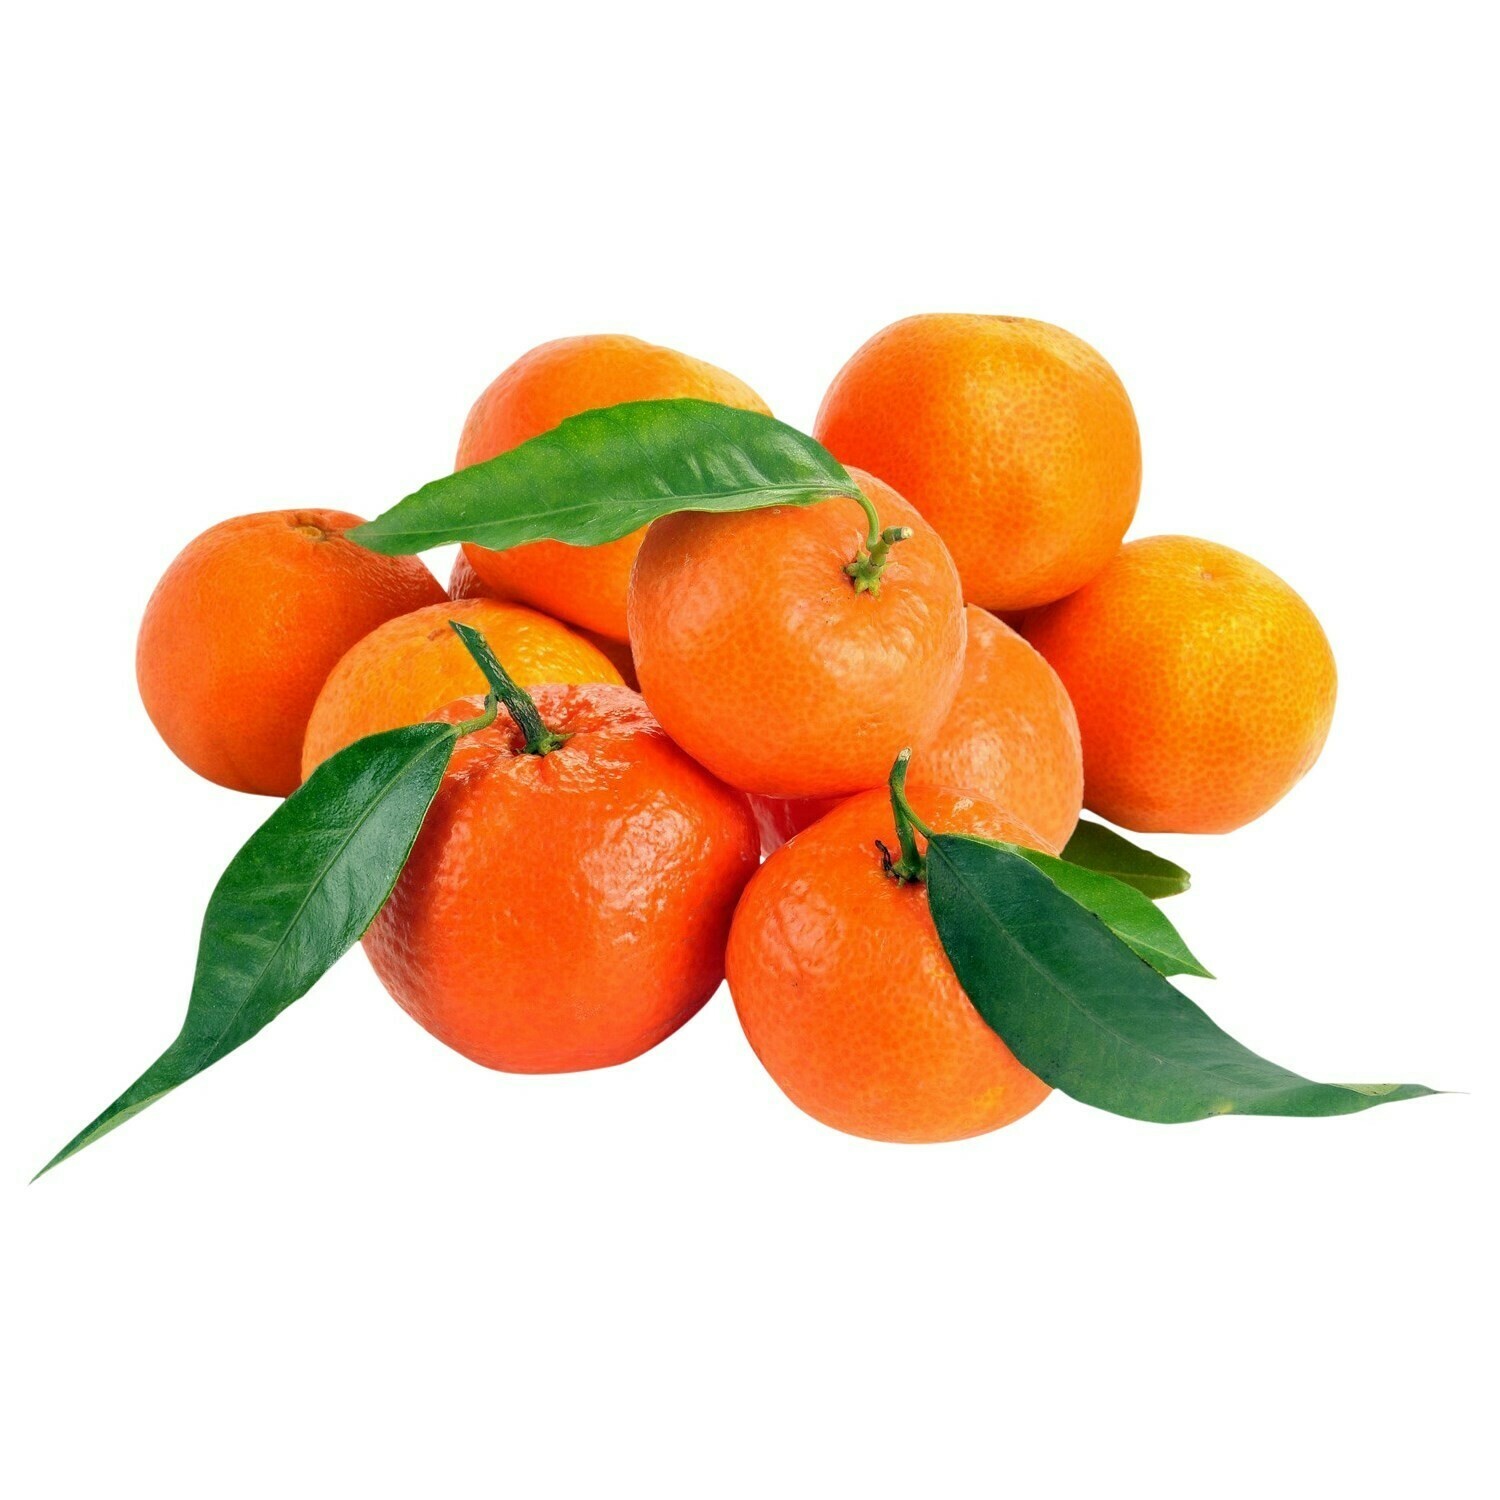 Orange sans pépins, Vendues individuellement, 0,25 - 0,28 kg